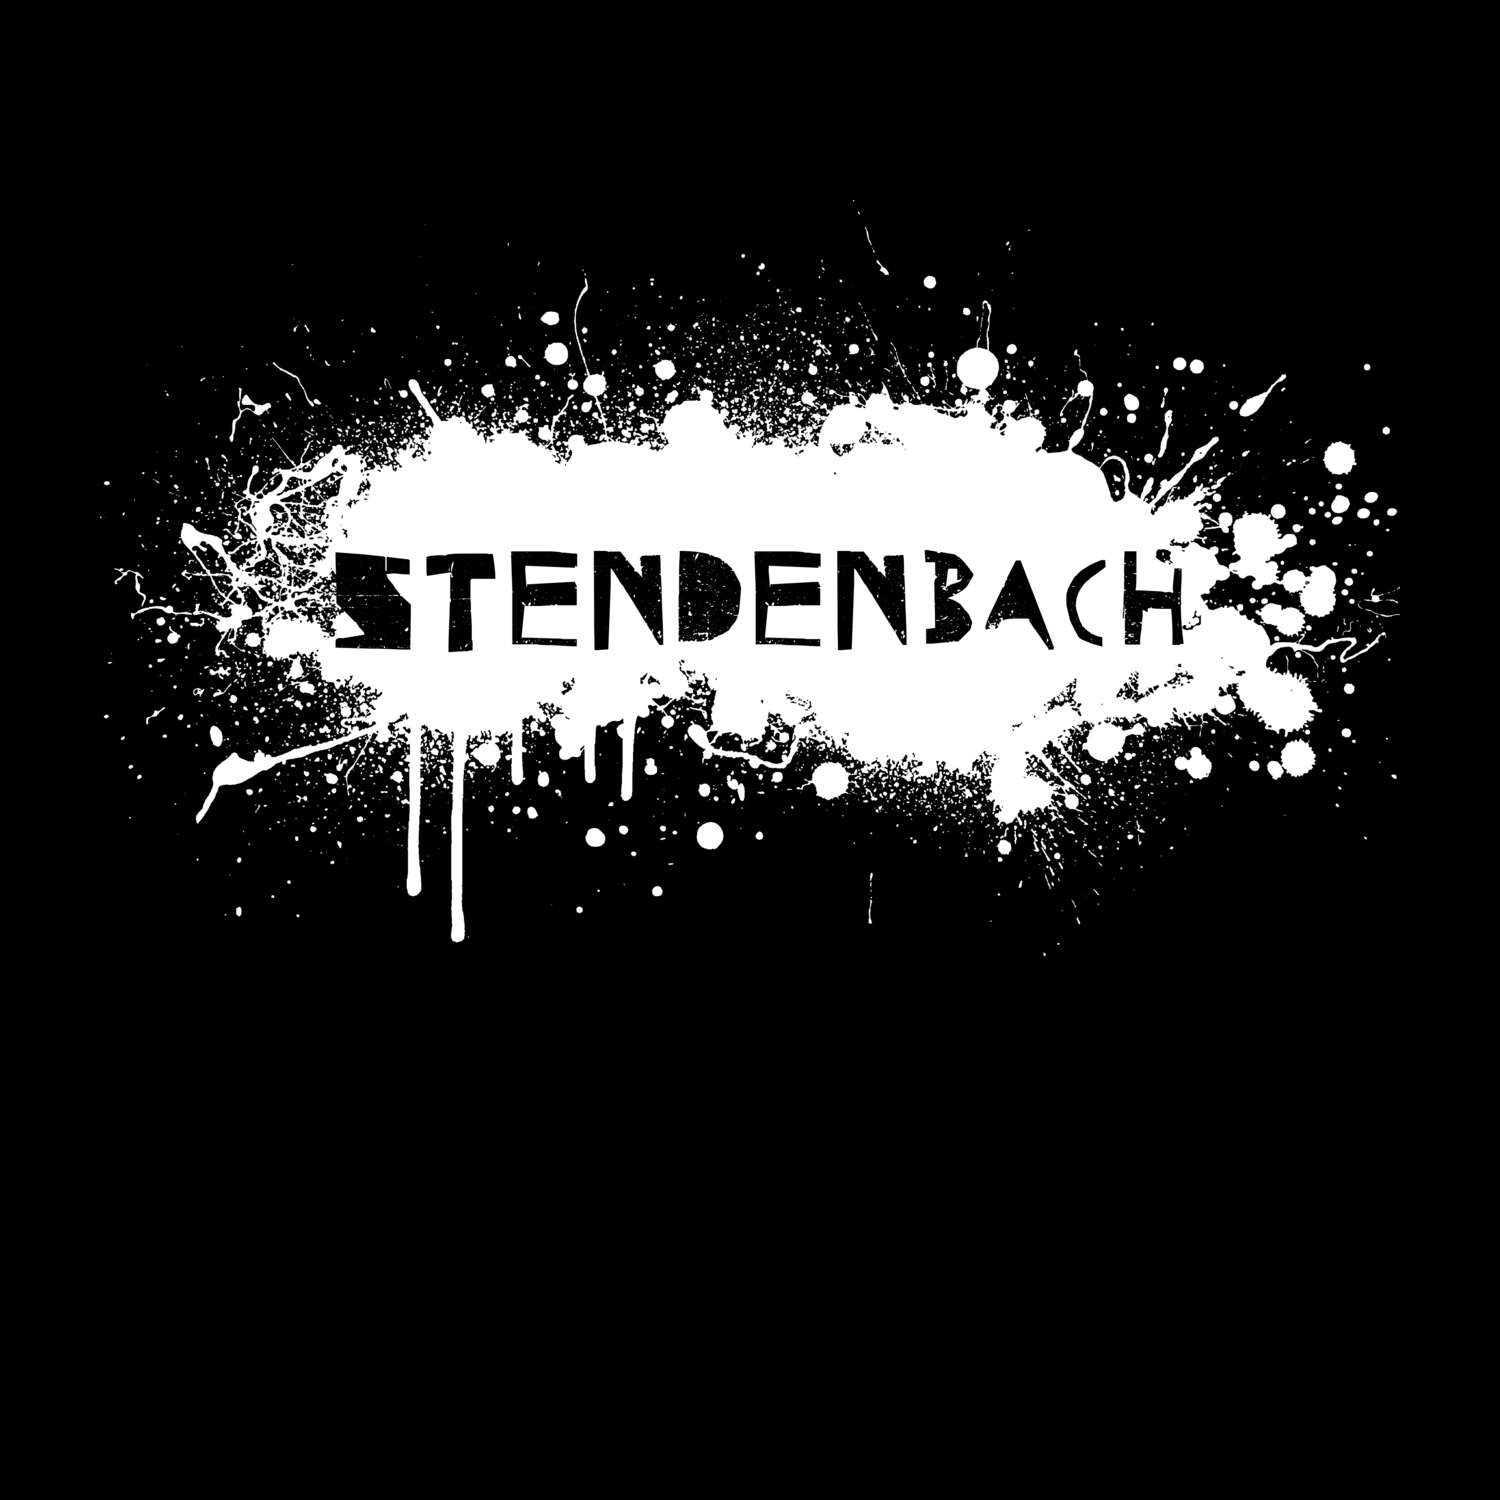 Stendenbach T-Shirt »Paint Splash Punk«